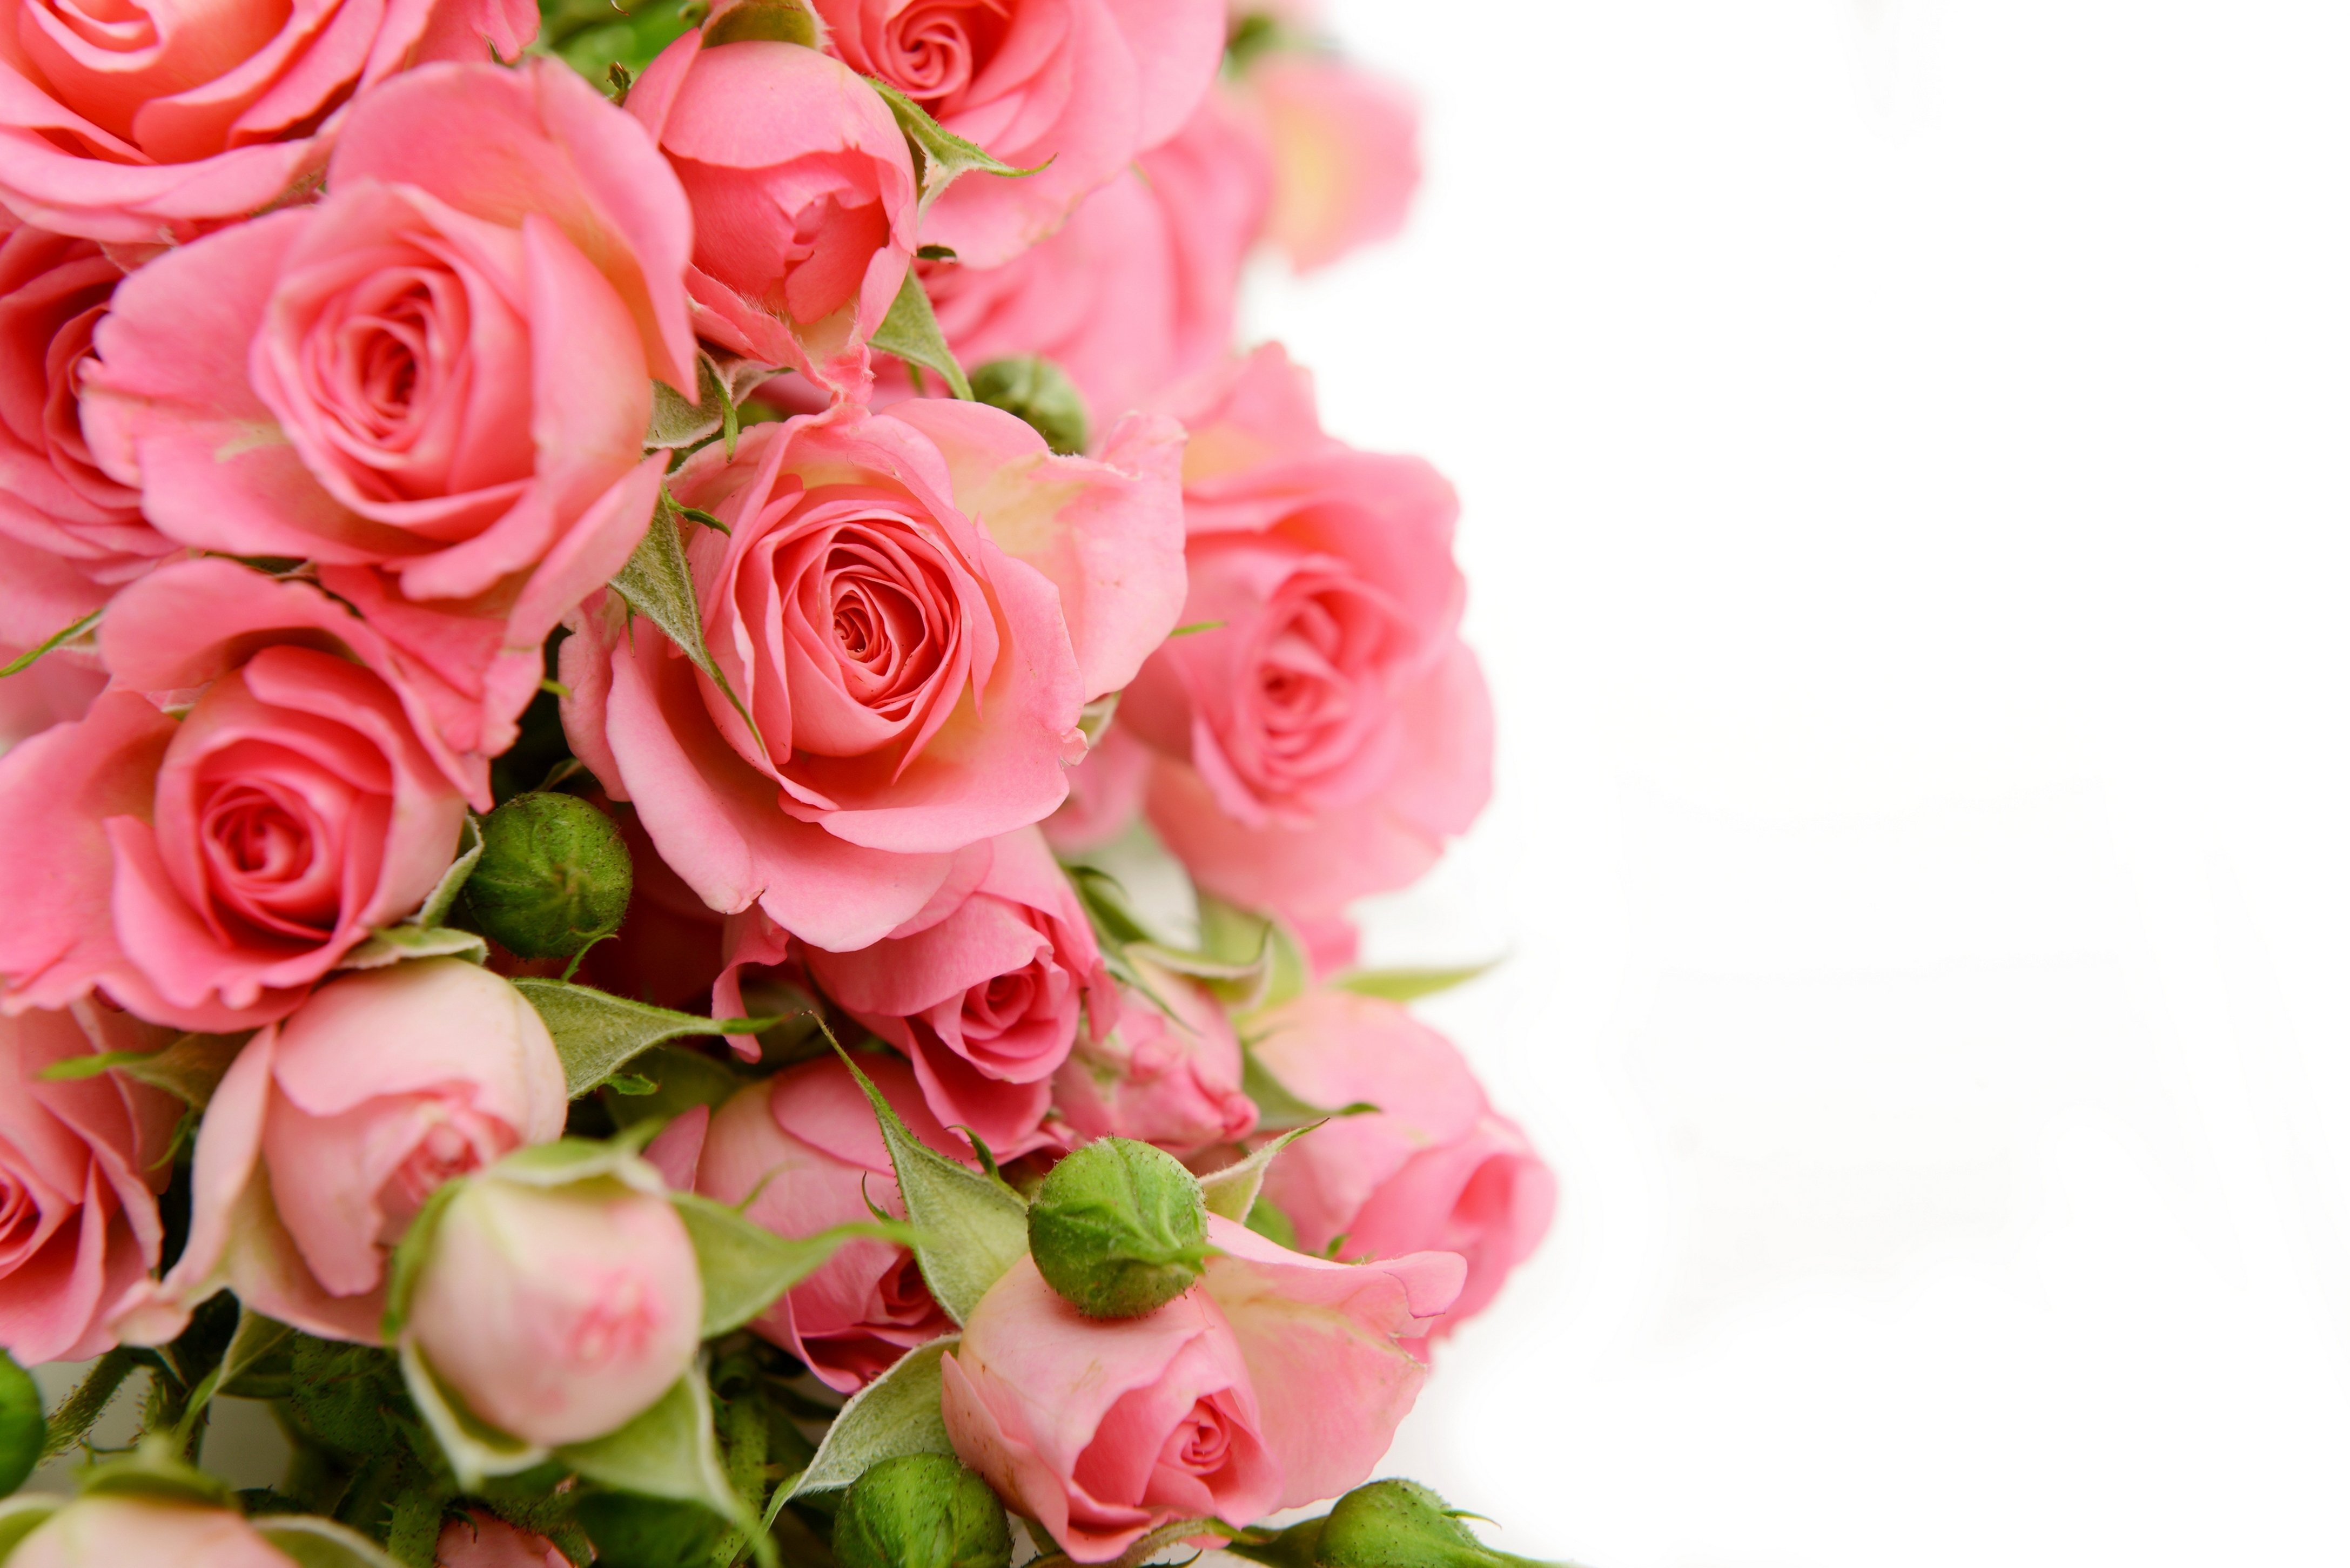 Открытка с красивыми цветами поздравляем. Розовые розы фон. Поздравляю! (Цветок). Поздравление с юбилеем женщине. Открытка "букет".